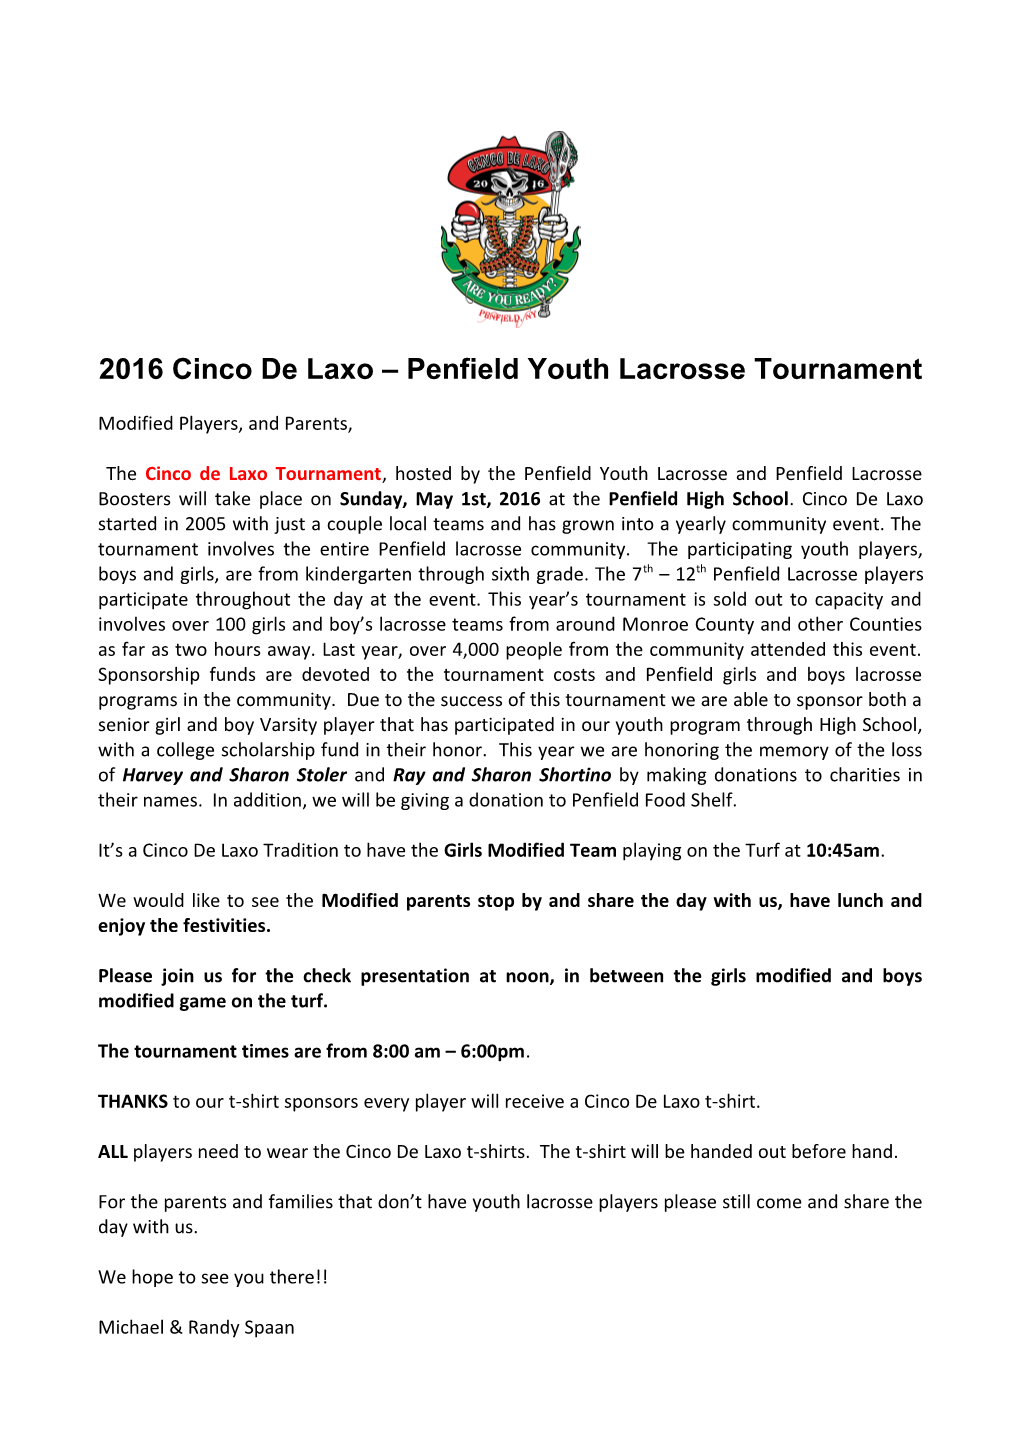 2016 Cinco De Laxo Penfield Youth Lacrosse Tournament